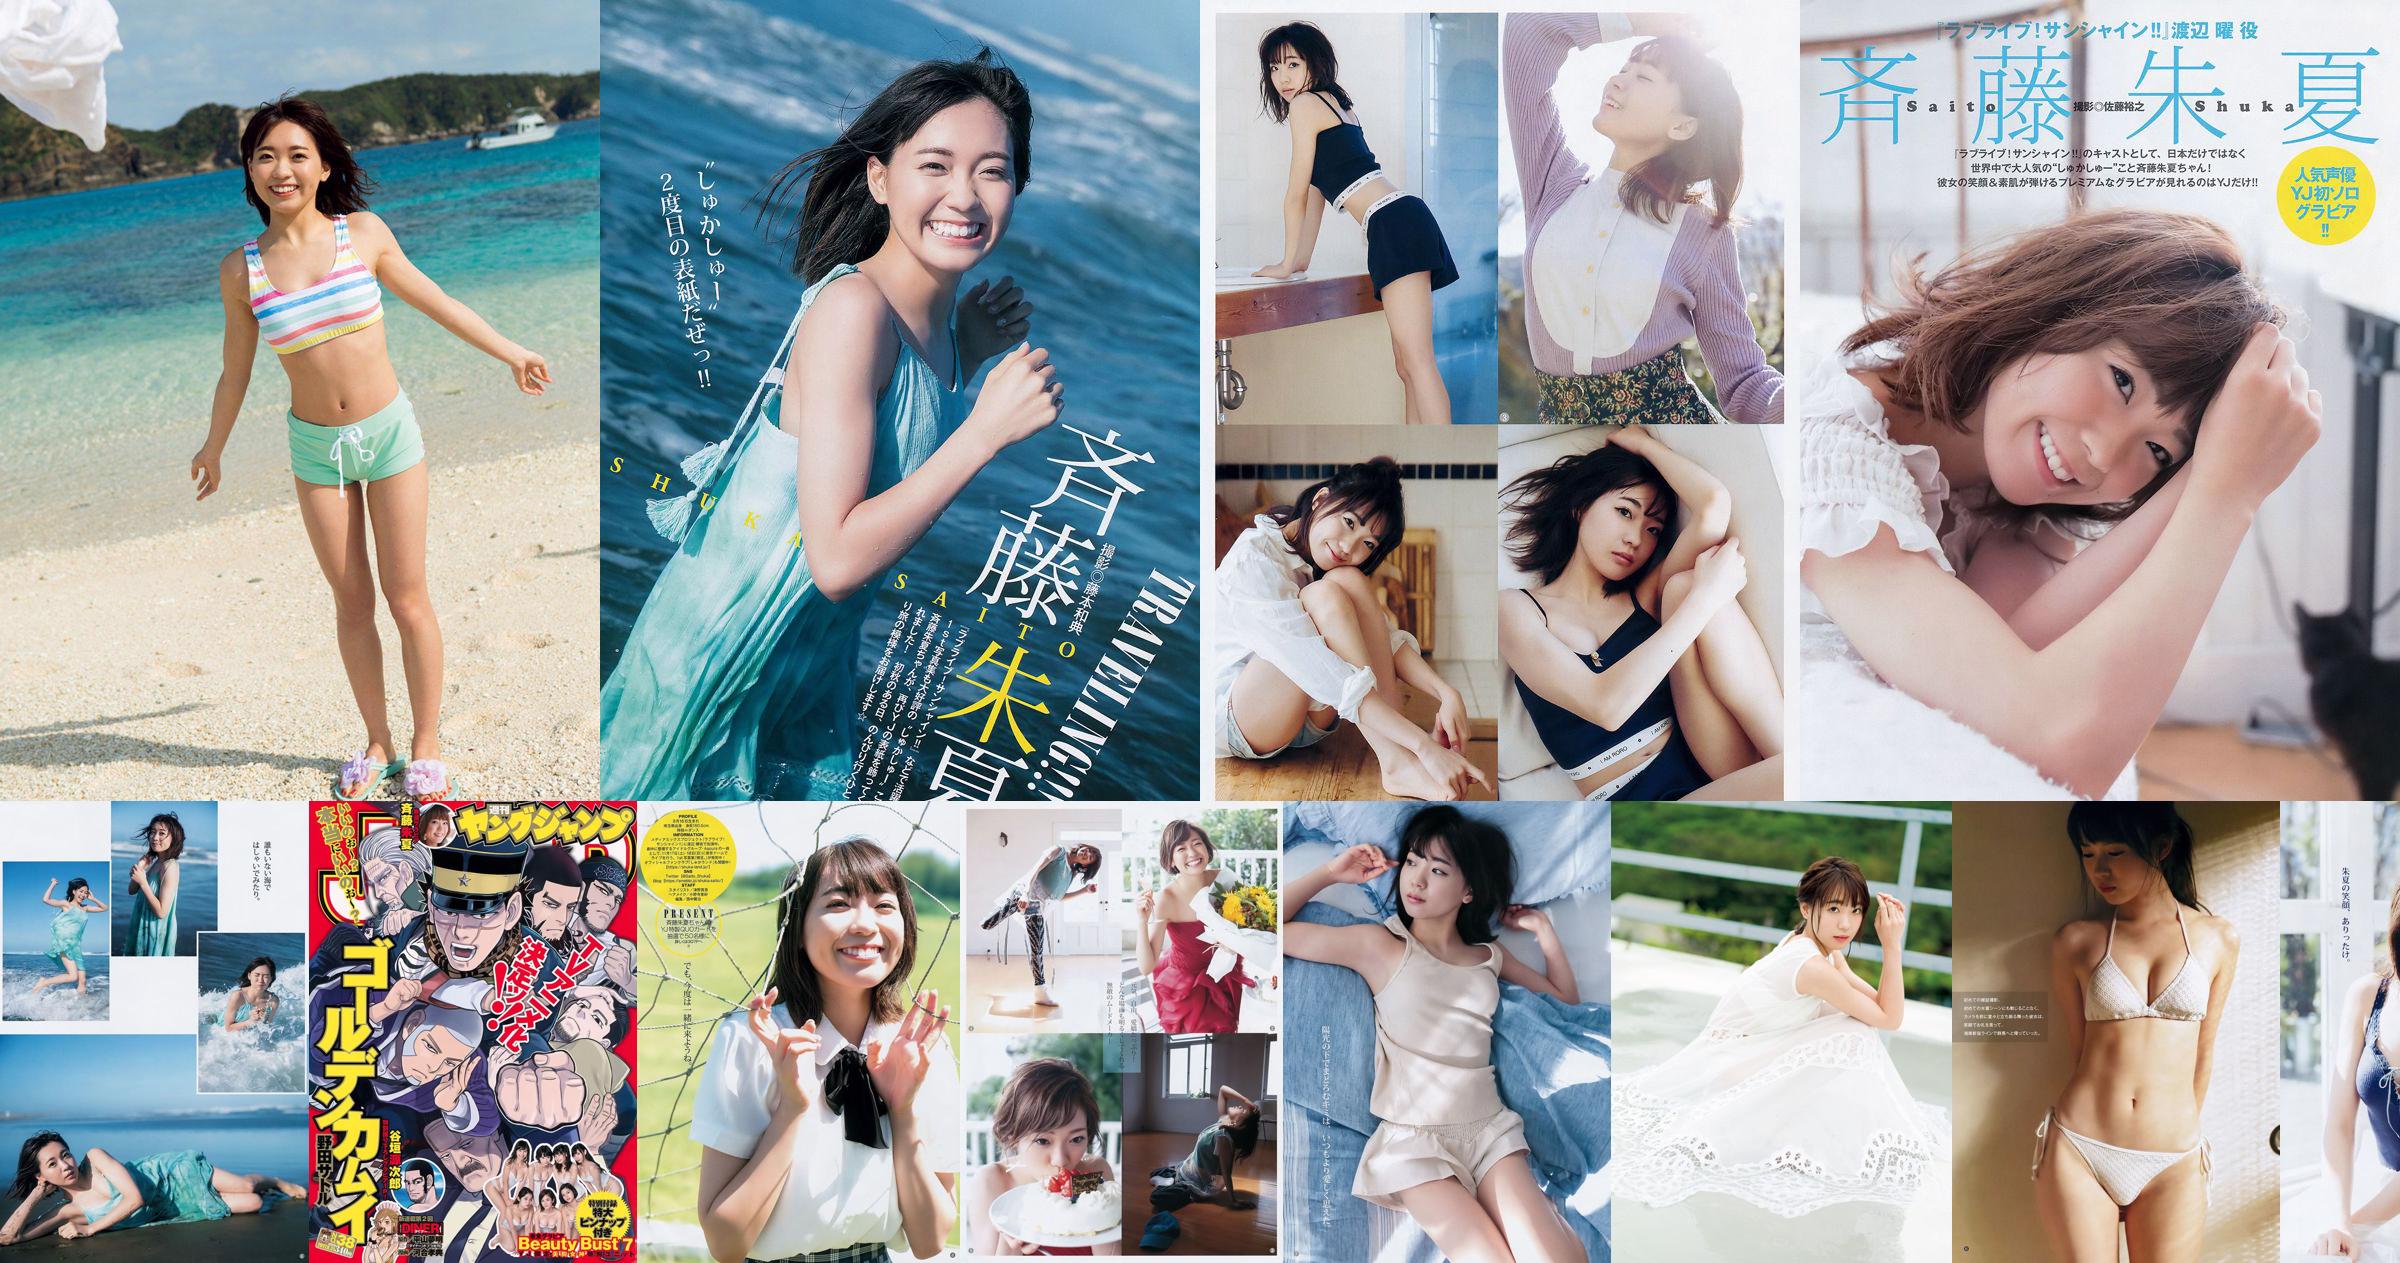 Shuka Saito Beauty Bust 7 [Weekly Young Jump] 2017 No.38 Photo No.6c841f Page 3